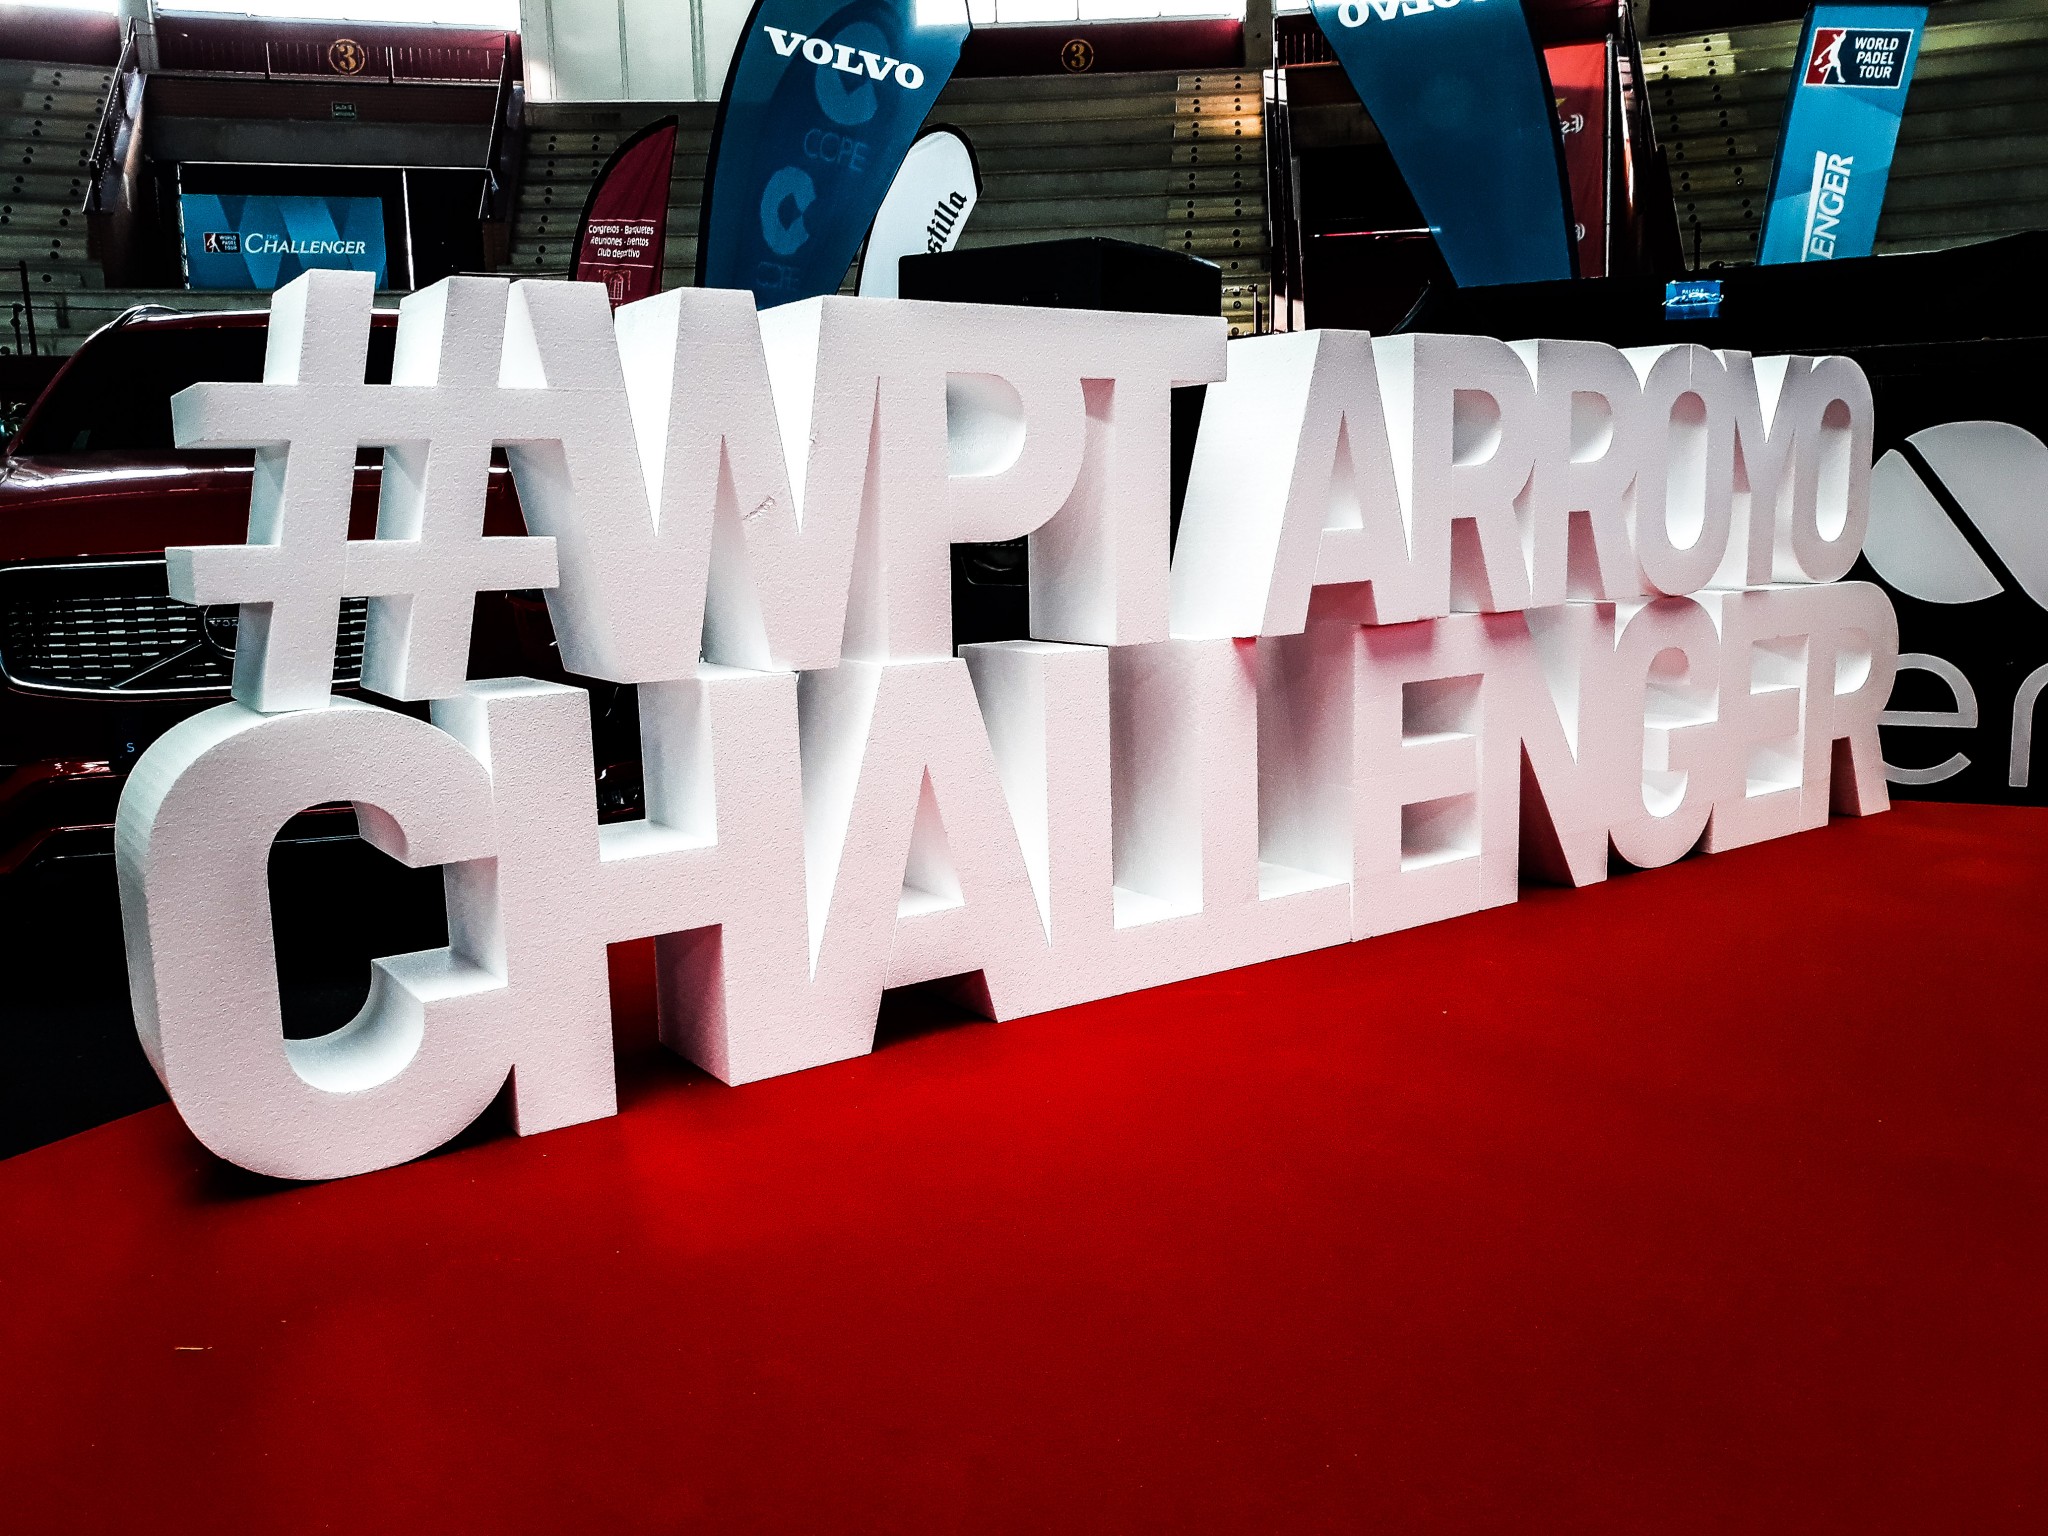 Chegou o calendário de torneios do WPT Challenger